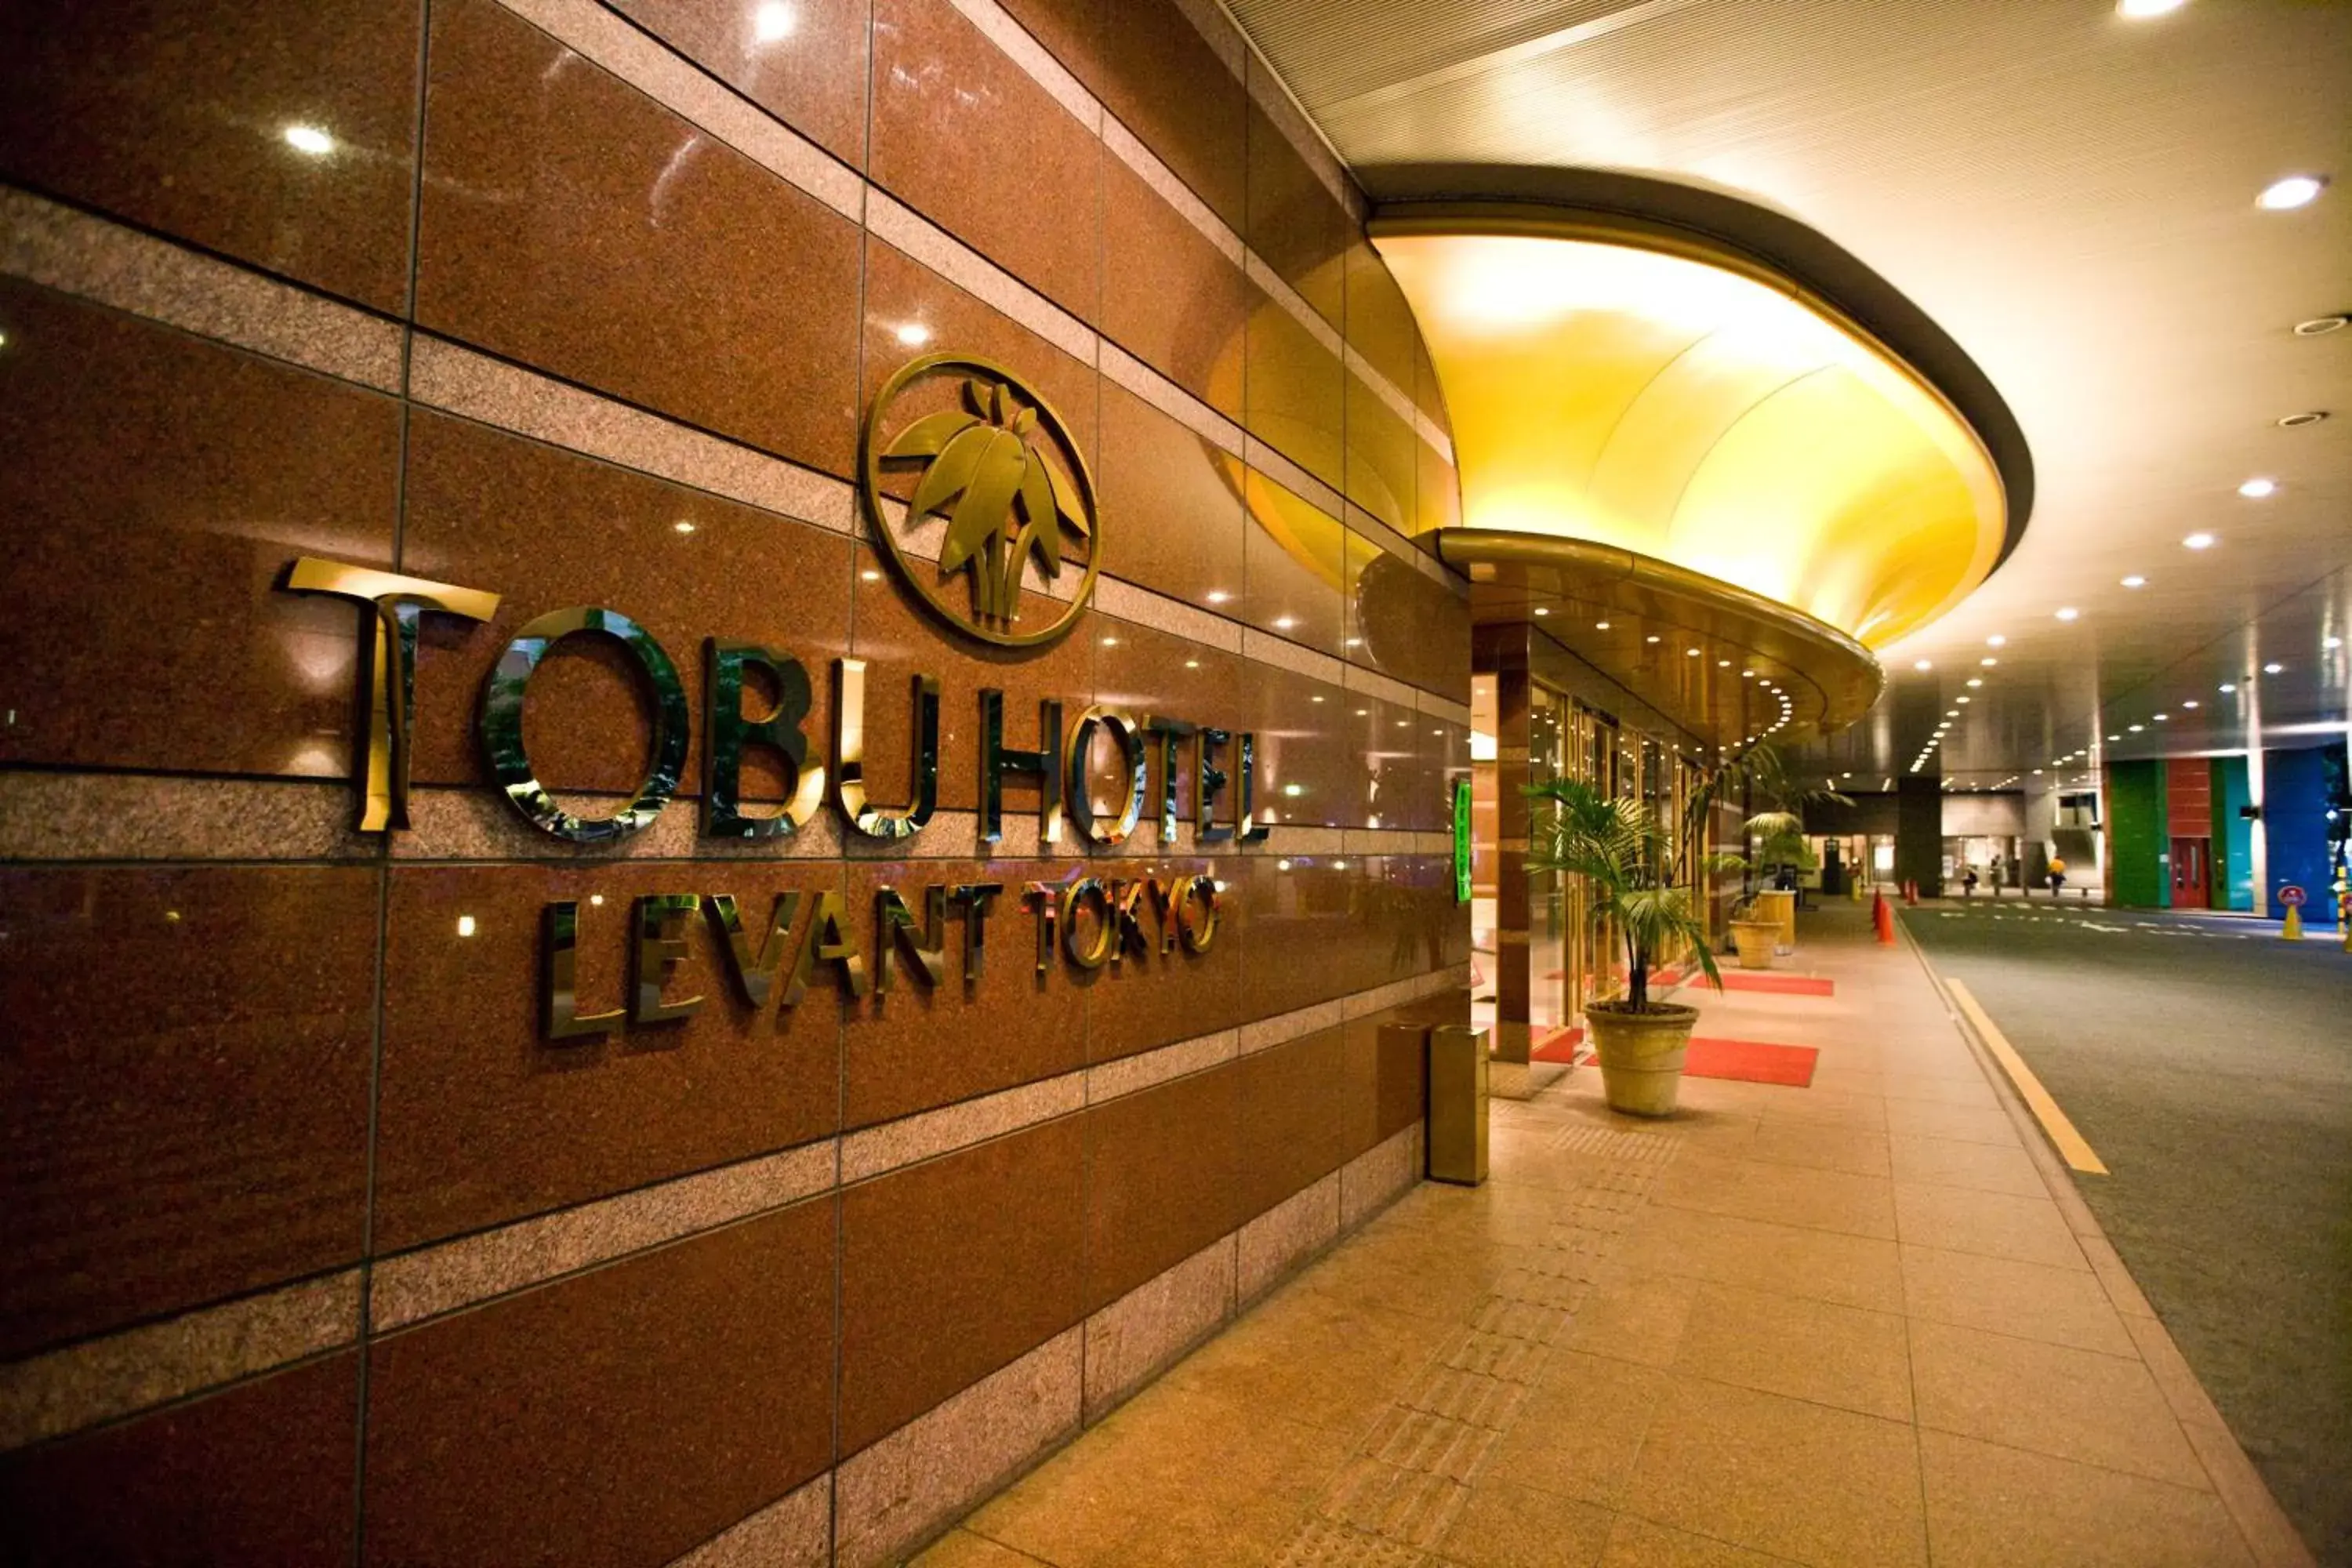 Lobby or reception in Tobu Hotel Levant Tokyo